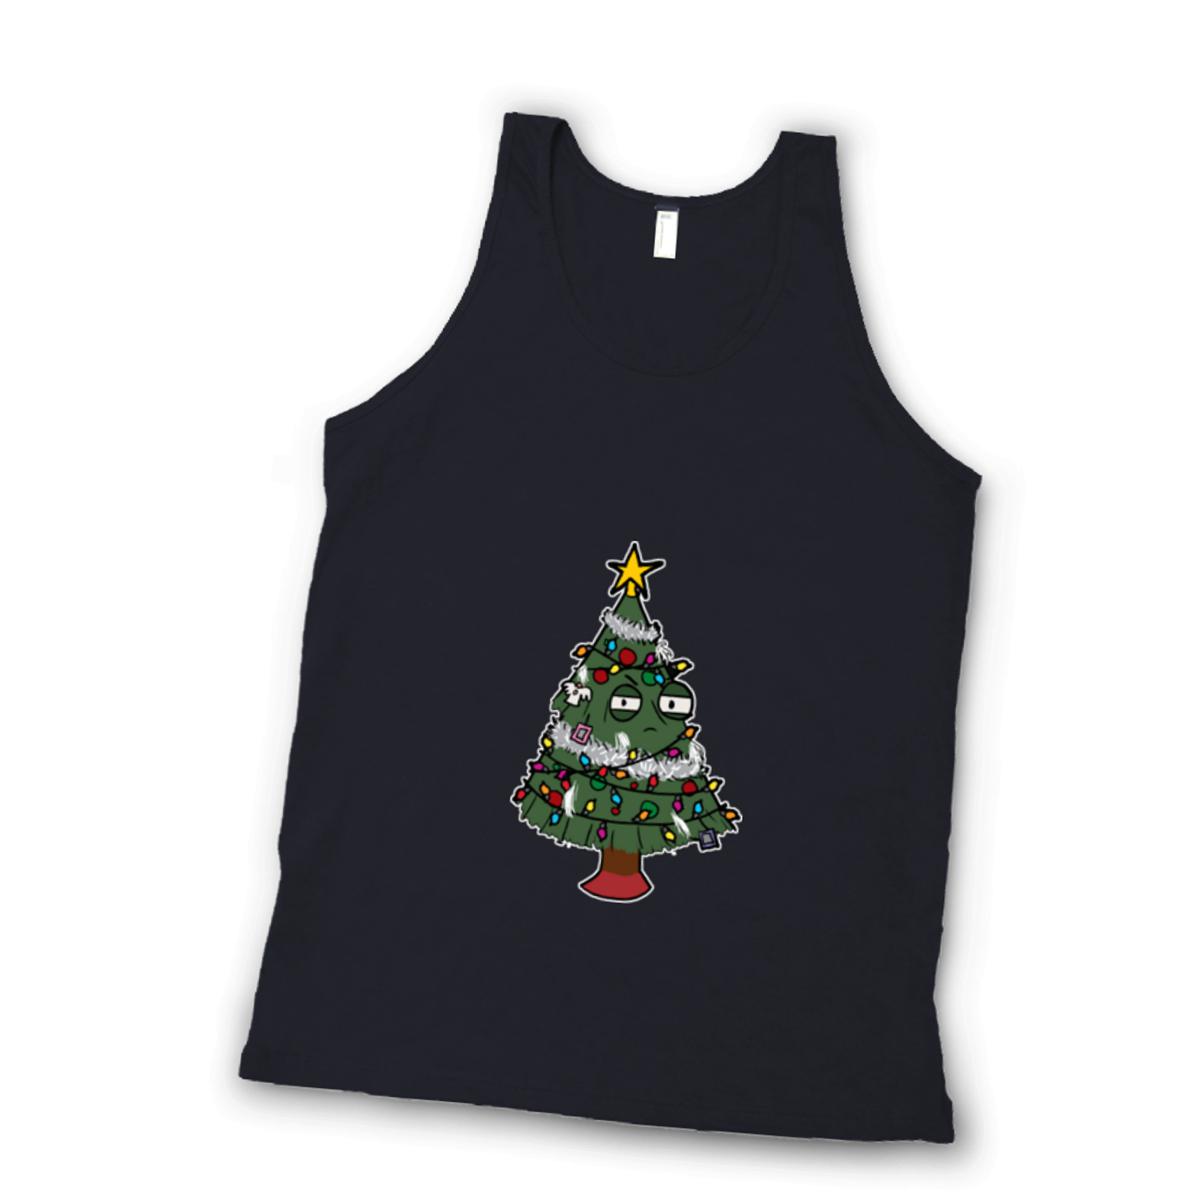 Gaudy Christmas Tree Unisex Tank Top Small black